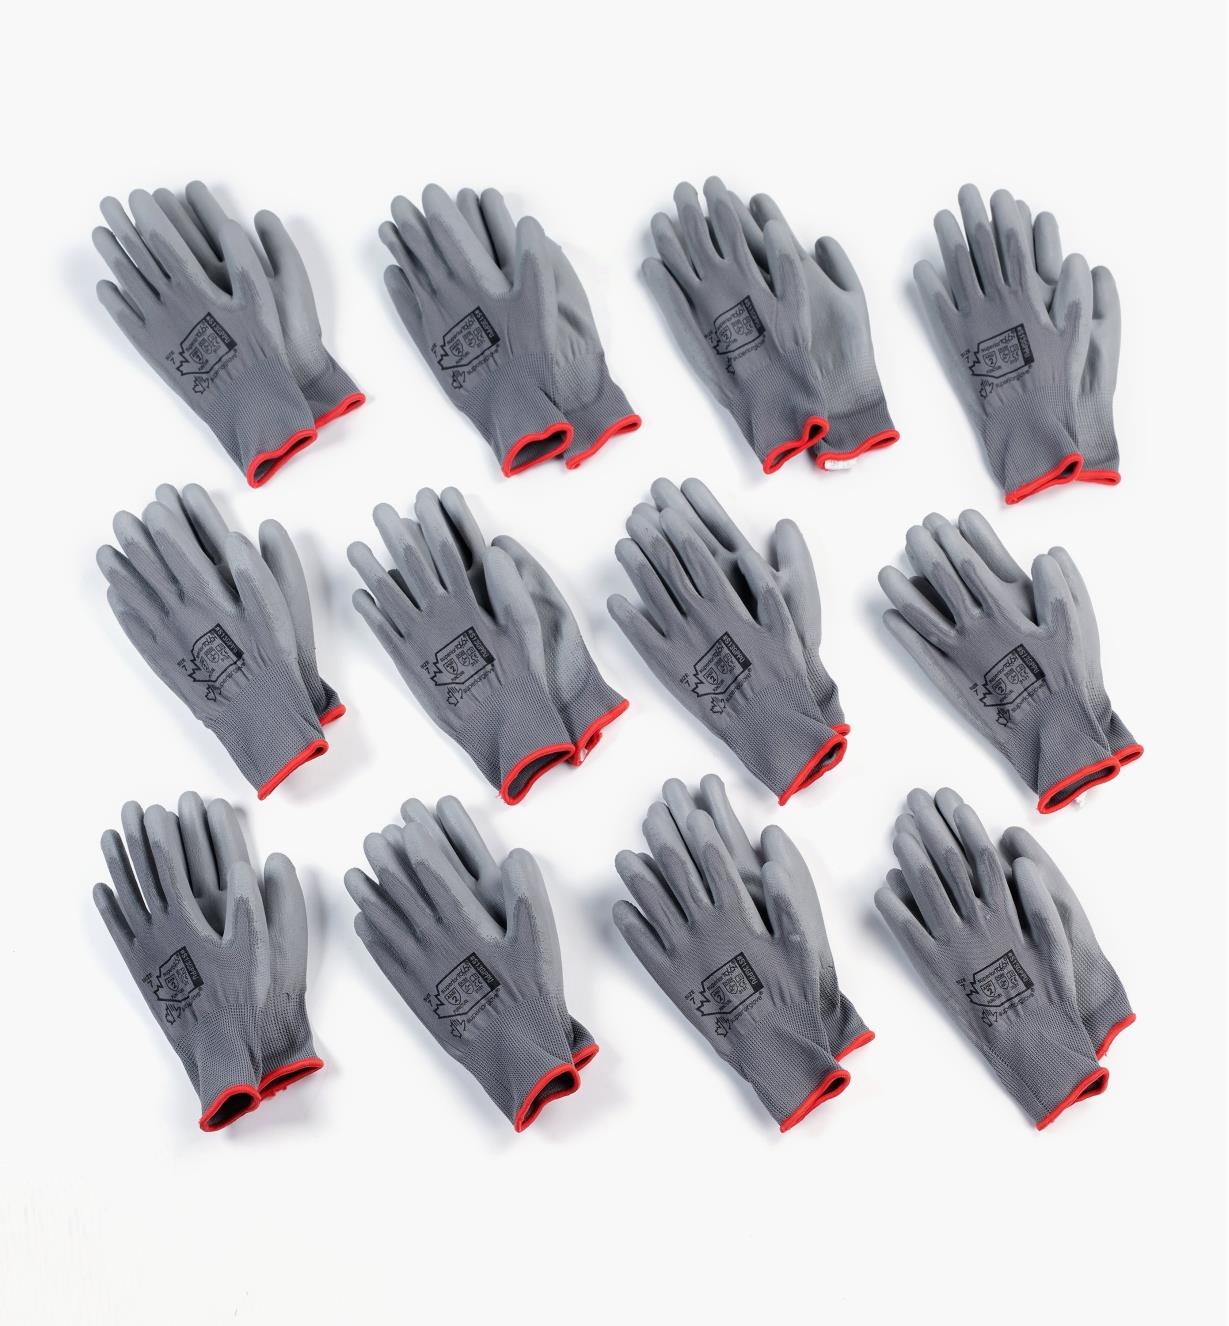 Caractéristiques conformes à la norme EN388. Un gant de travail en polyuréthane avec excellente adhérence et montage 12 paires de gants de travail GUARD 5 